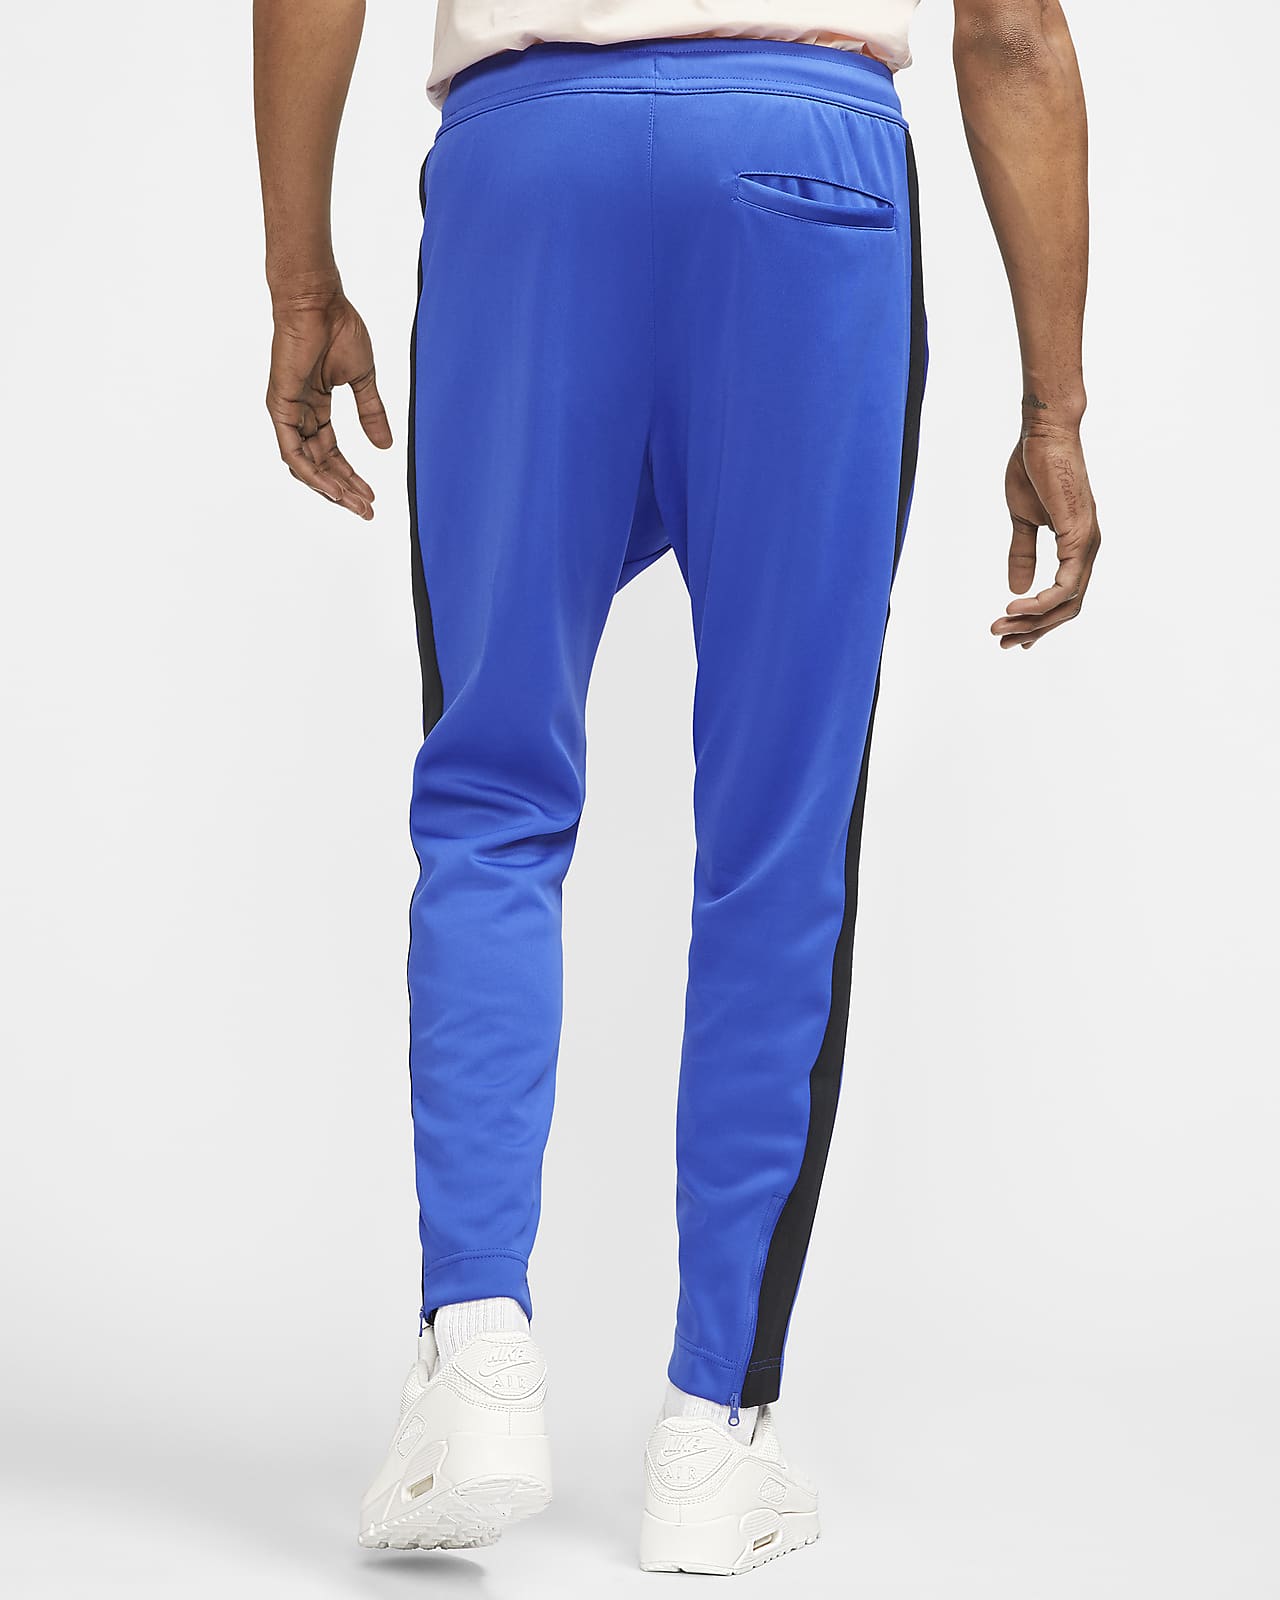 QUẦN DÀI CHÍNH HÃNG - NIKE Sportswear Men's Pants Blue/White - AR2246-481